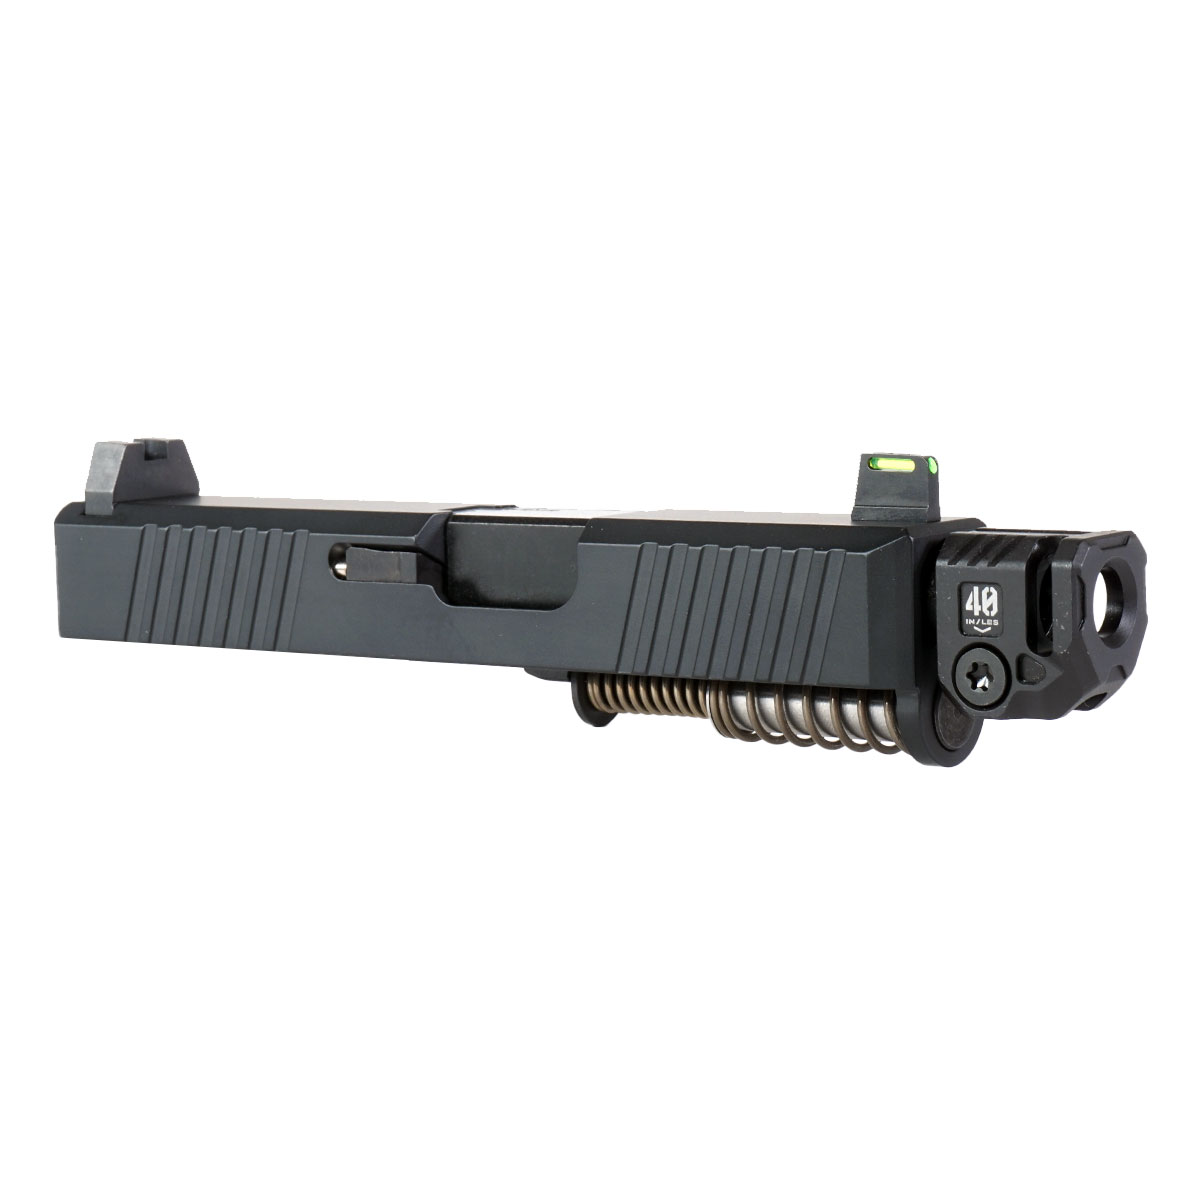 OTD 'Joint Resolution' 9mm Complete Slide Kit - Glock 26 Gen 1-3 Compatible